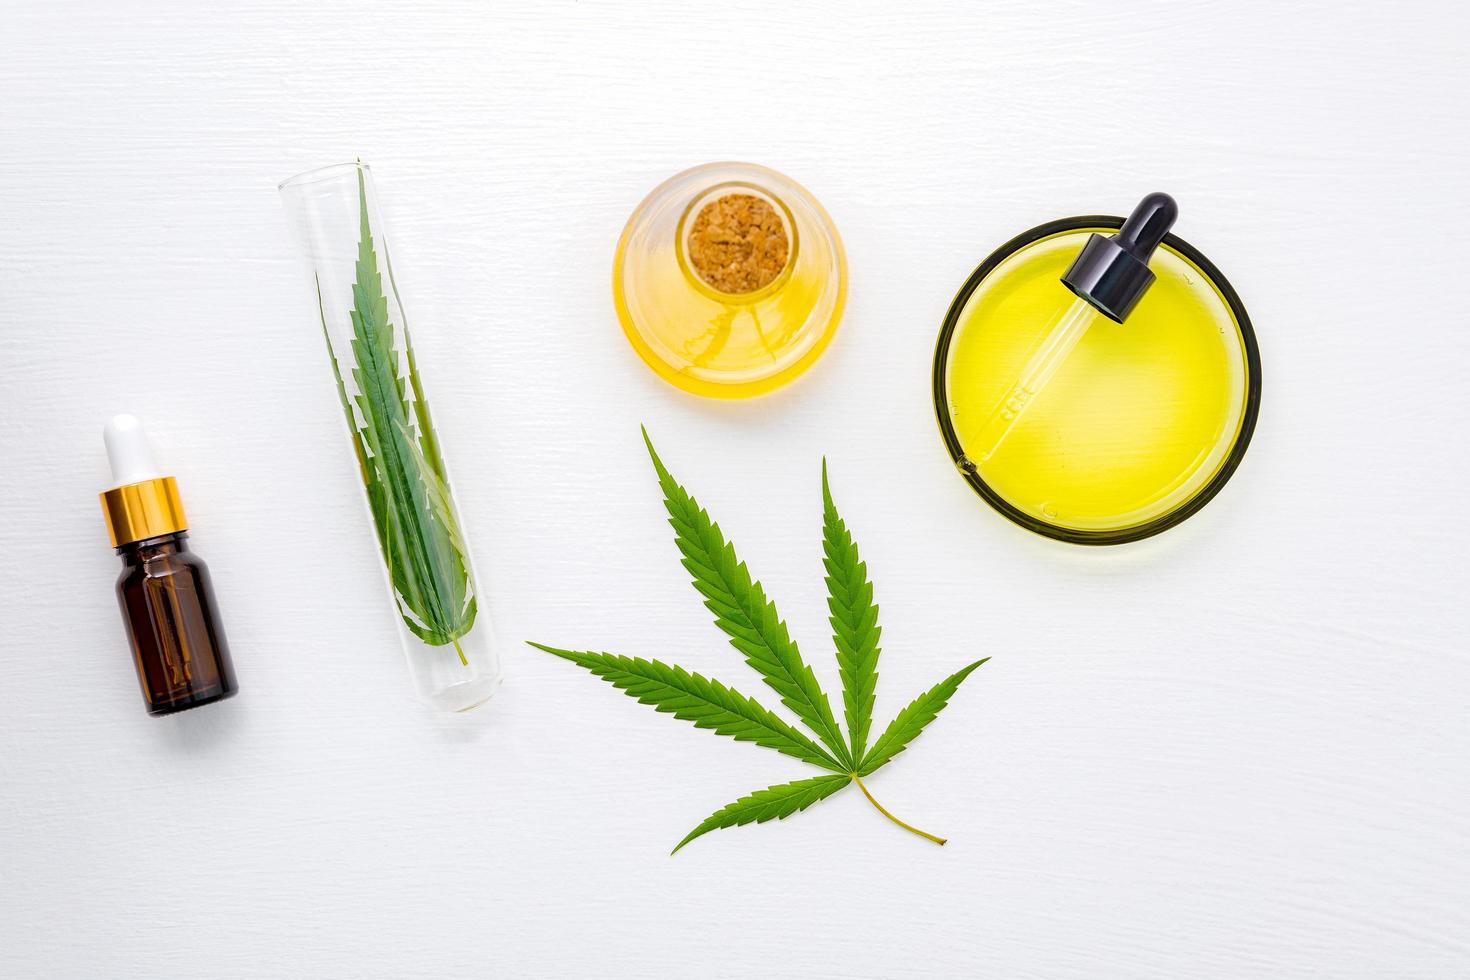 glazen fles cannabisolie en hennepbladeren die op witte achtergrond worden geplaatst foto